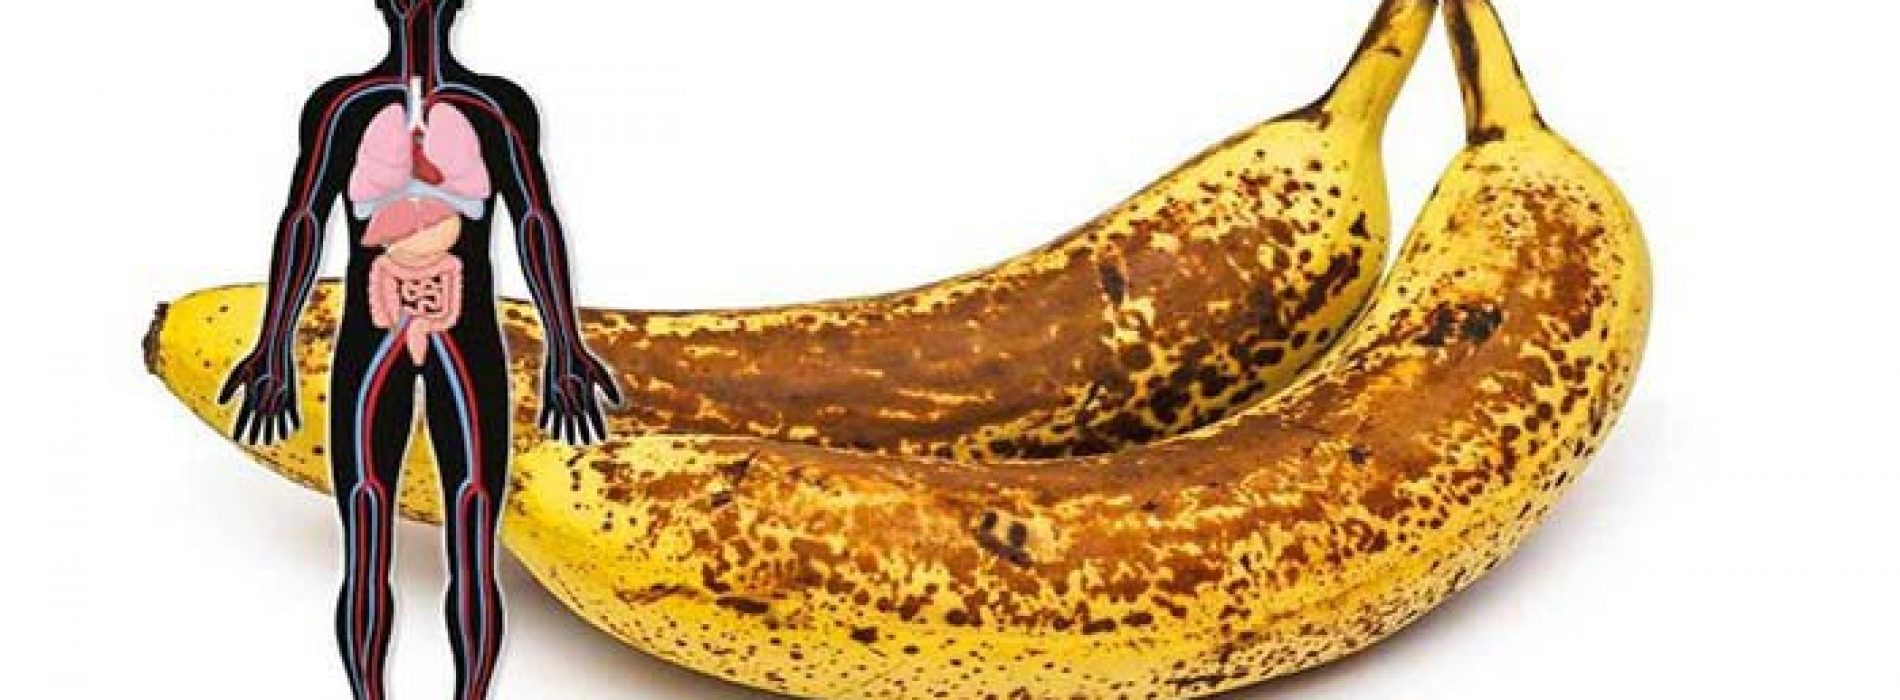 Dit is wat er met je gebeurt als je 2 gevlekte bananen per dag eet en dat een maand lang